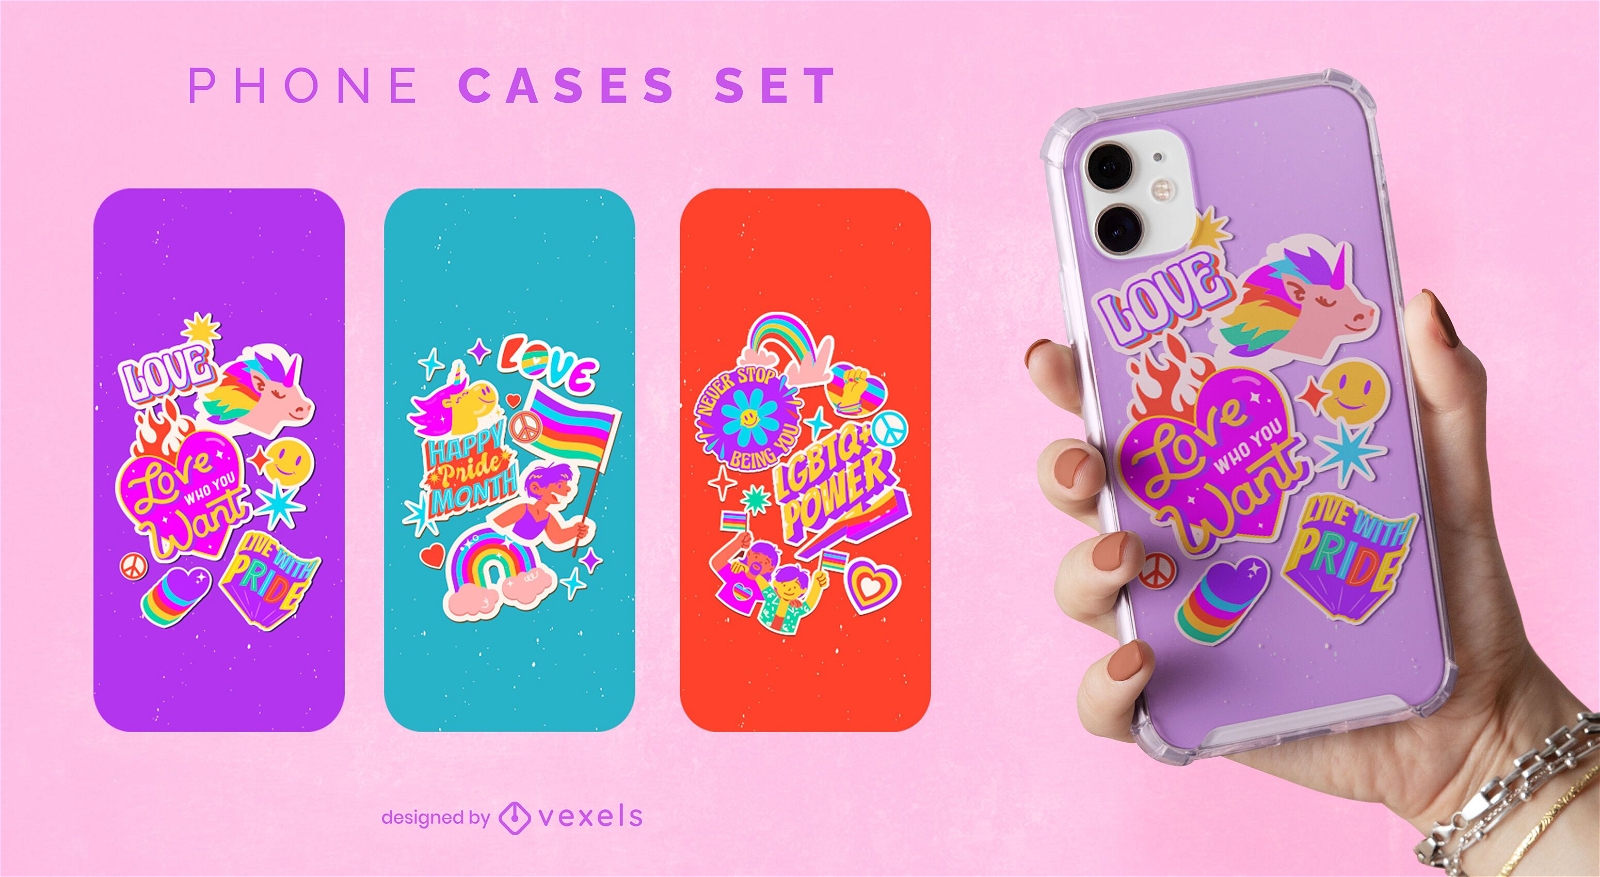 Happy pride month rainbow phone case set